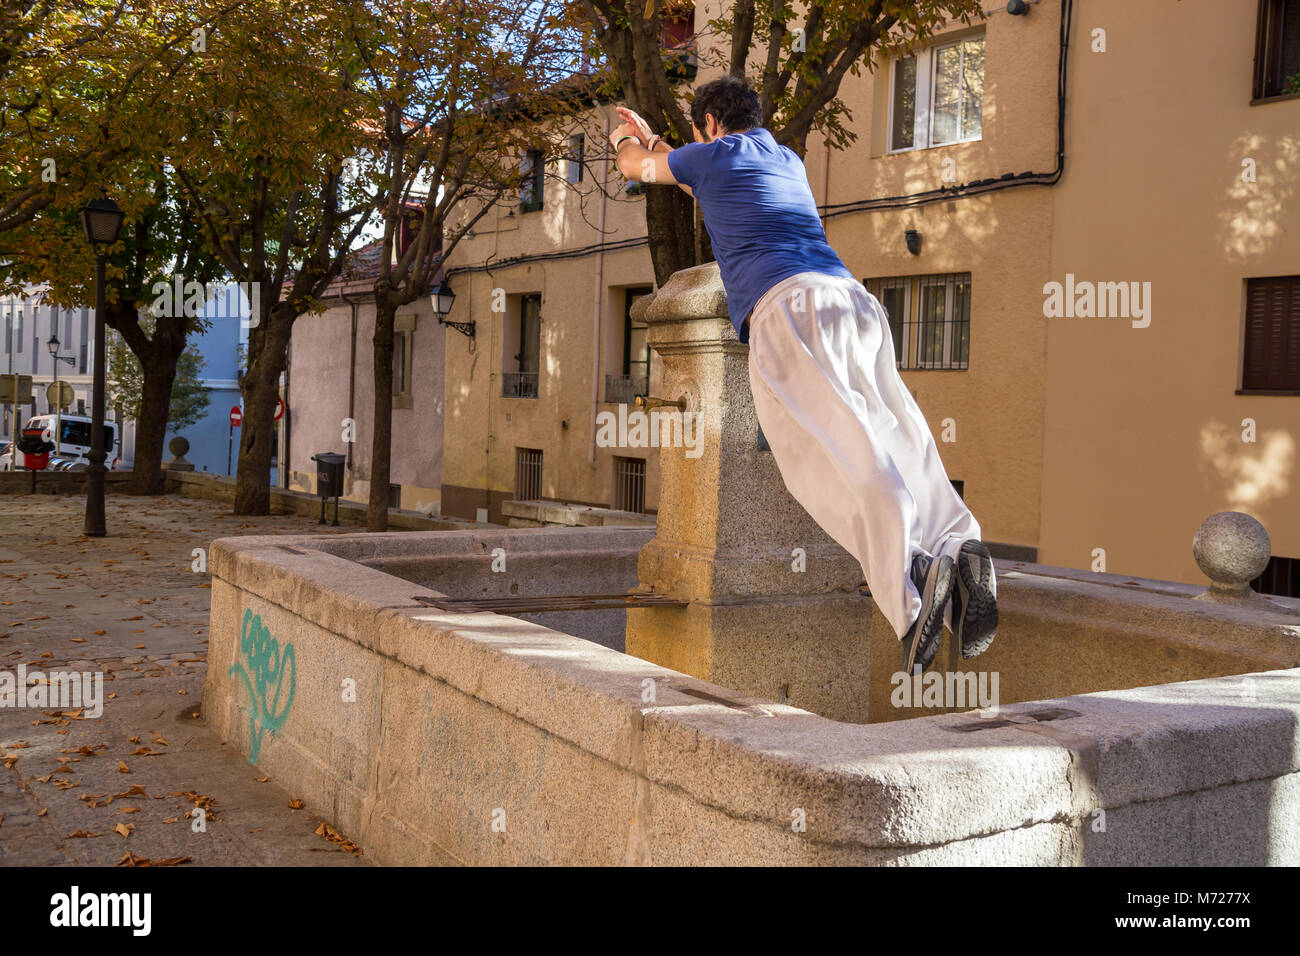 Giovane uomo che fa un impressionante salto parkour sulla strada. Foto Stock